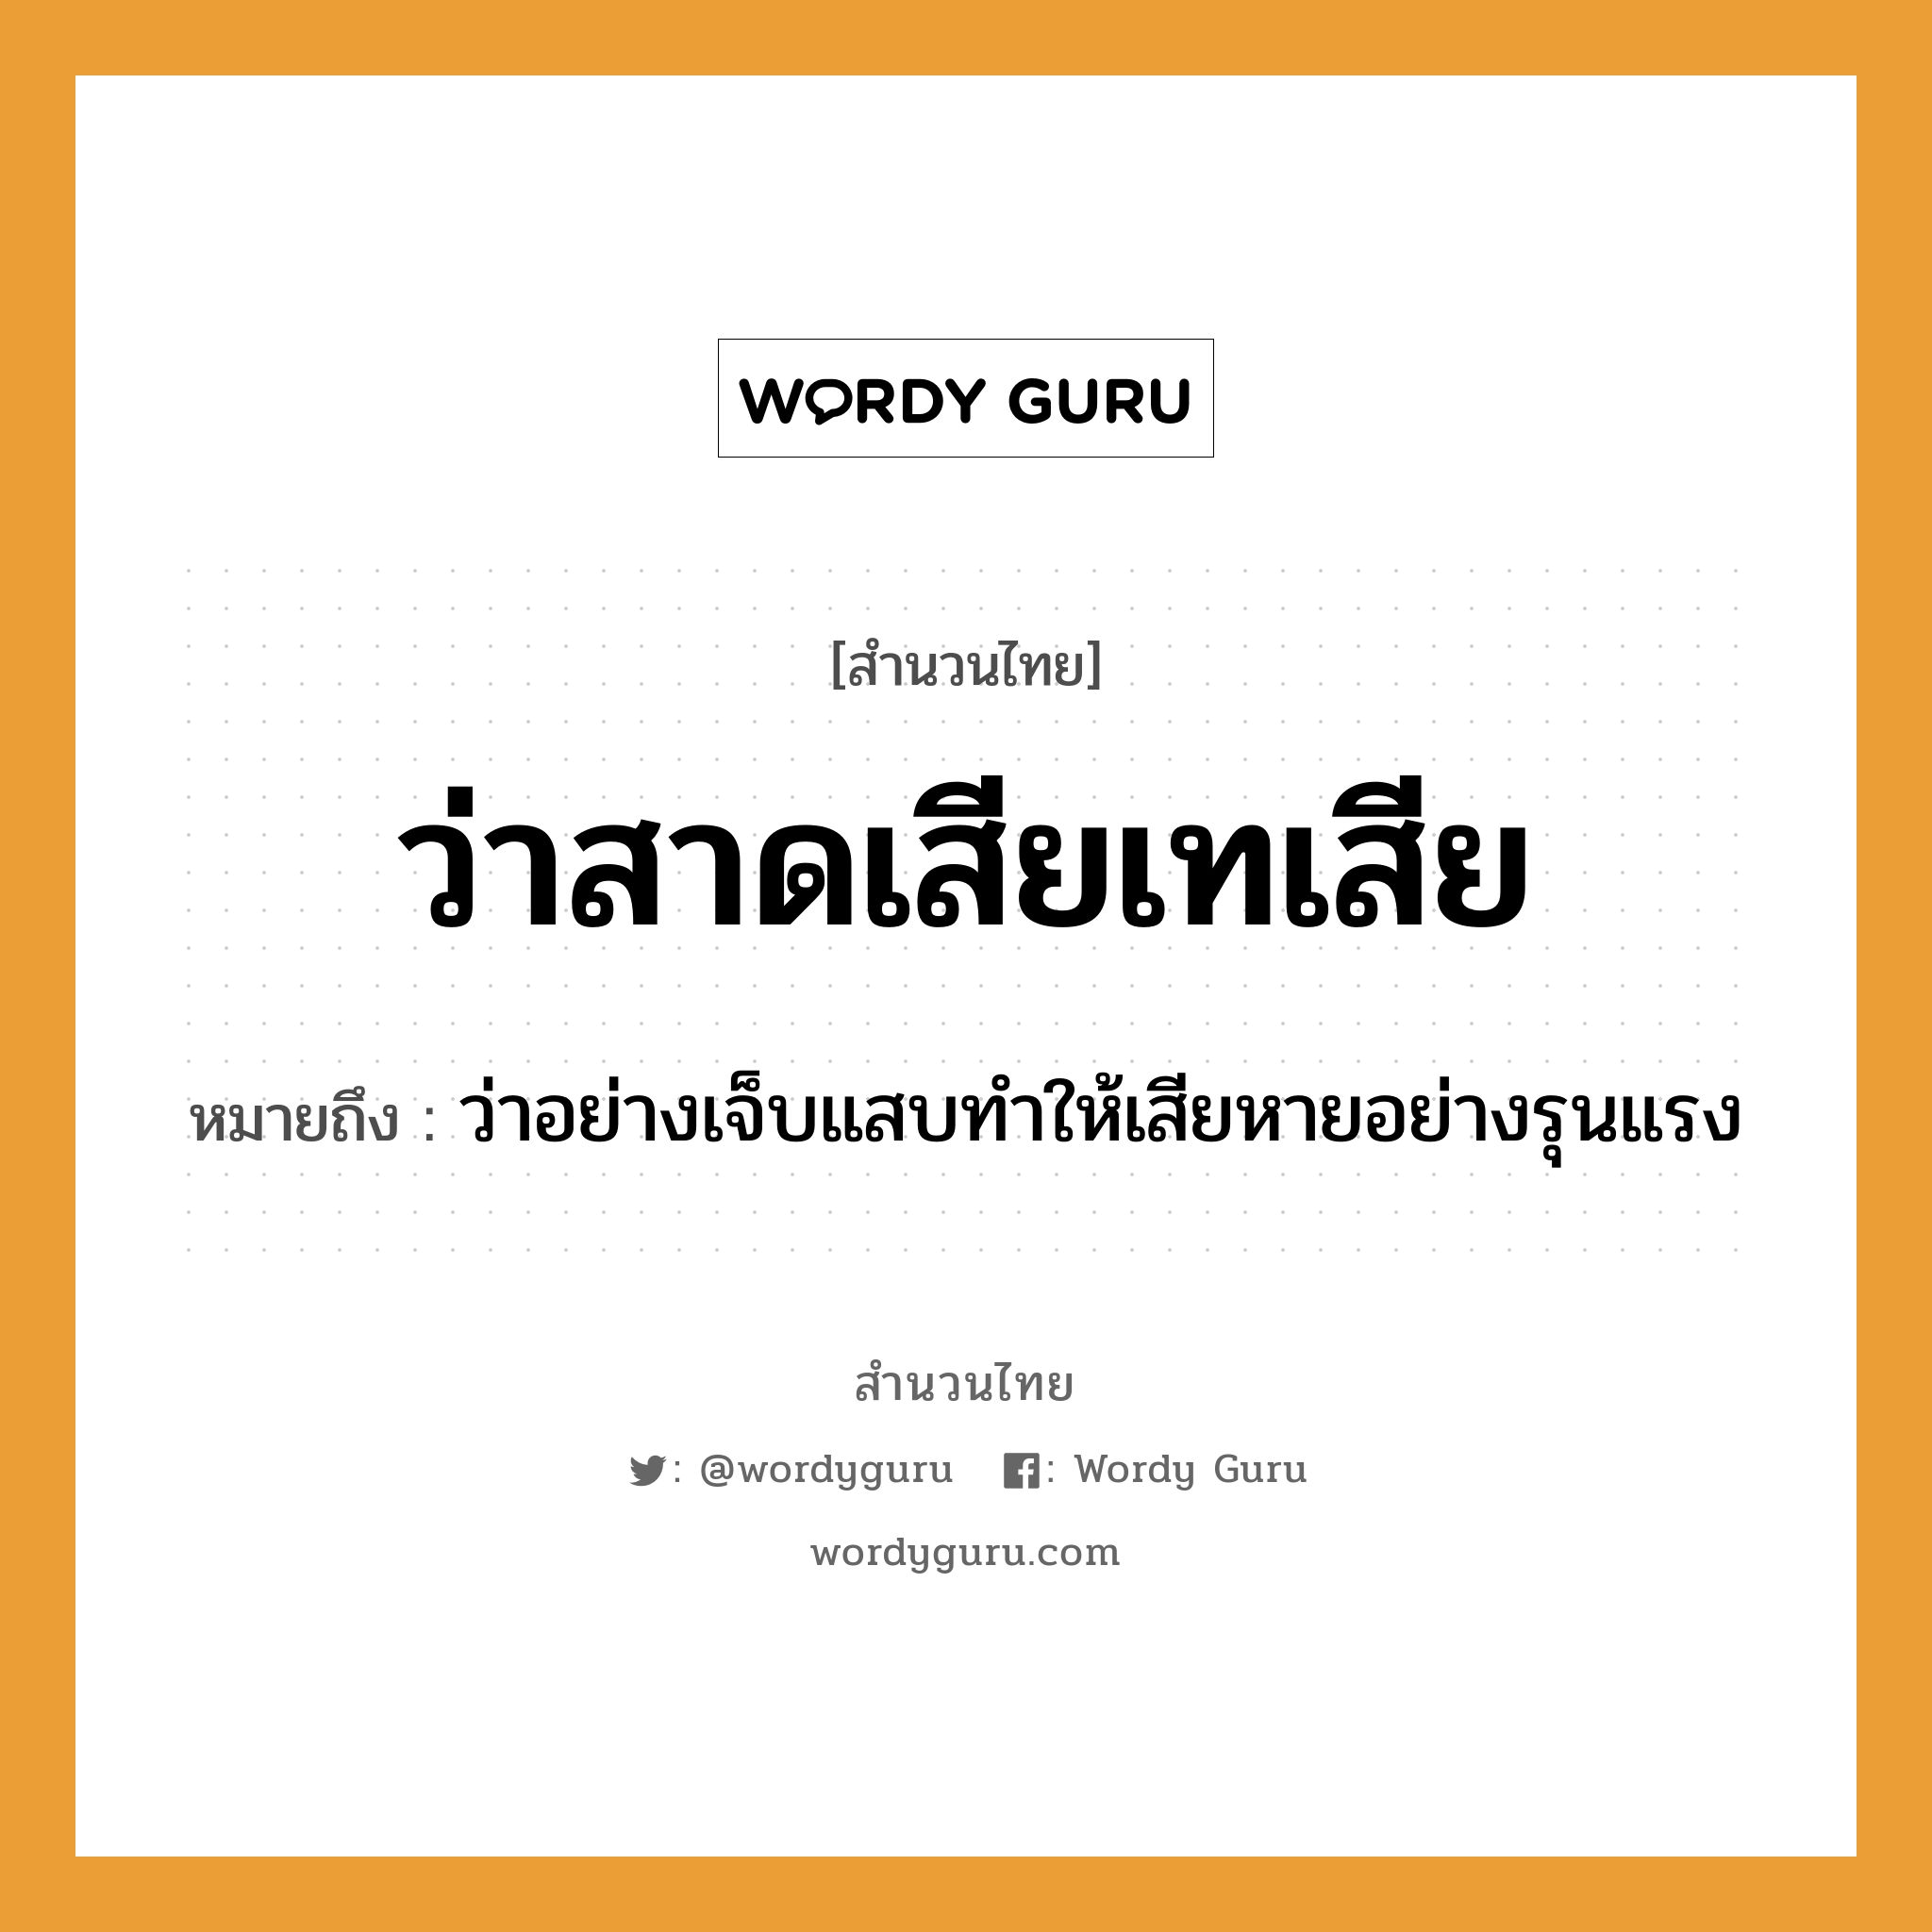 สำนวนไทย: ว่าสาดเสียเทเสีย หมายถึง?, สํานวนไทย ว่าสาดเสียเทเสีย หมายถึง ว่าอย่างเจ็บแสบทำให้เสียหายอย่างรุนแรง